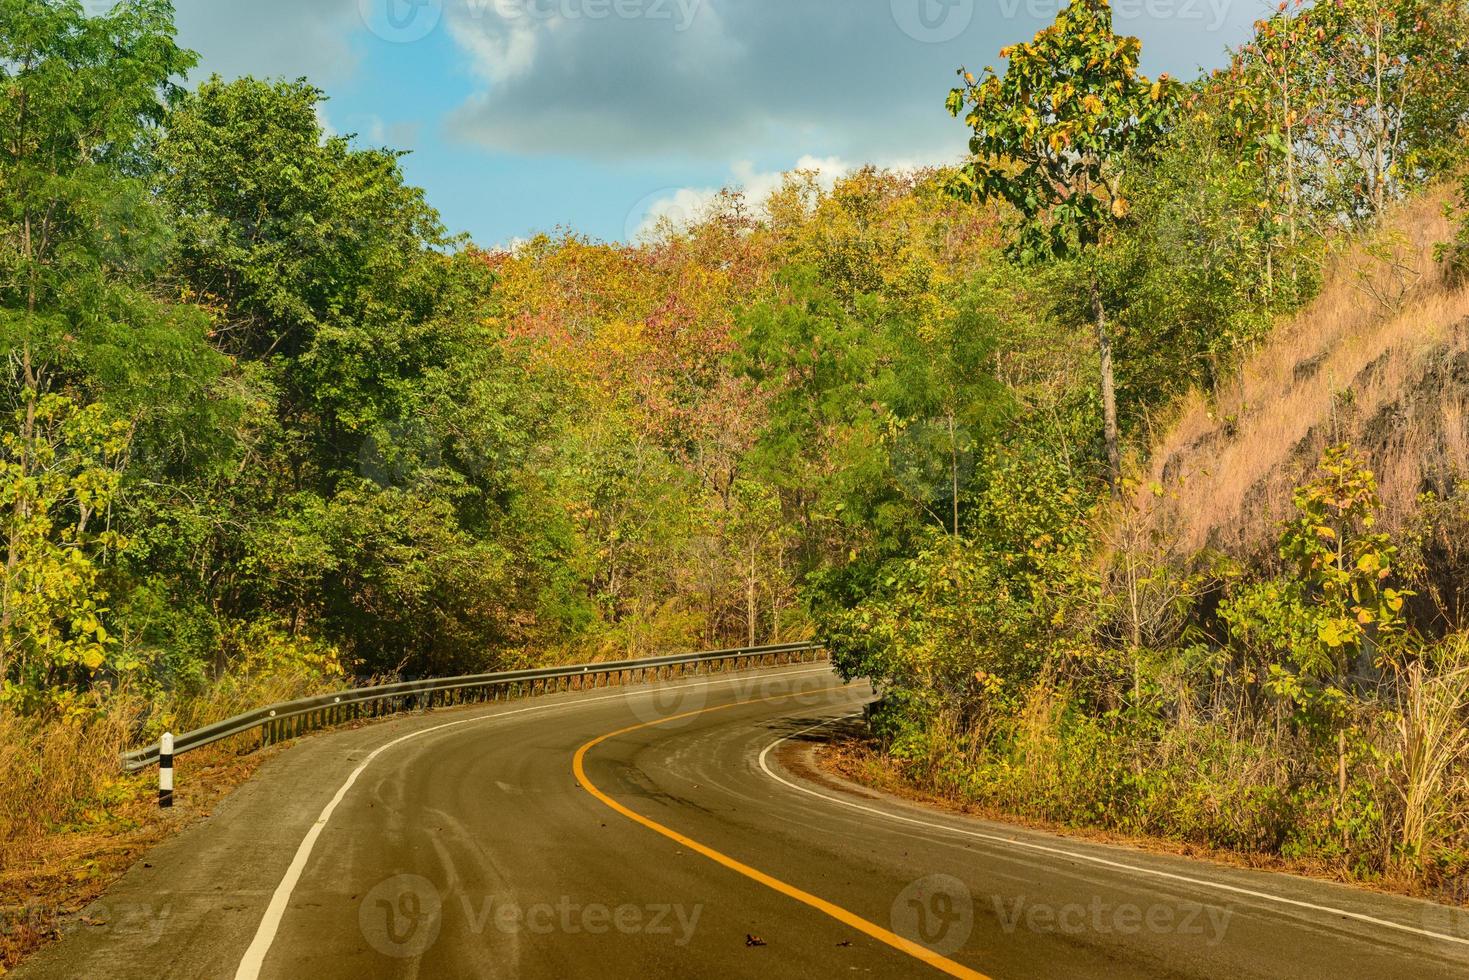 cor da estrada e da floresta em ambos os lados foto